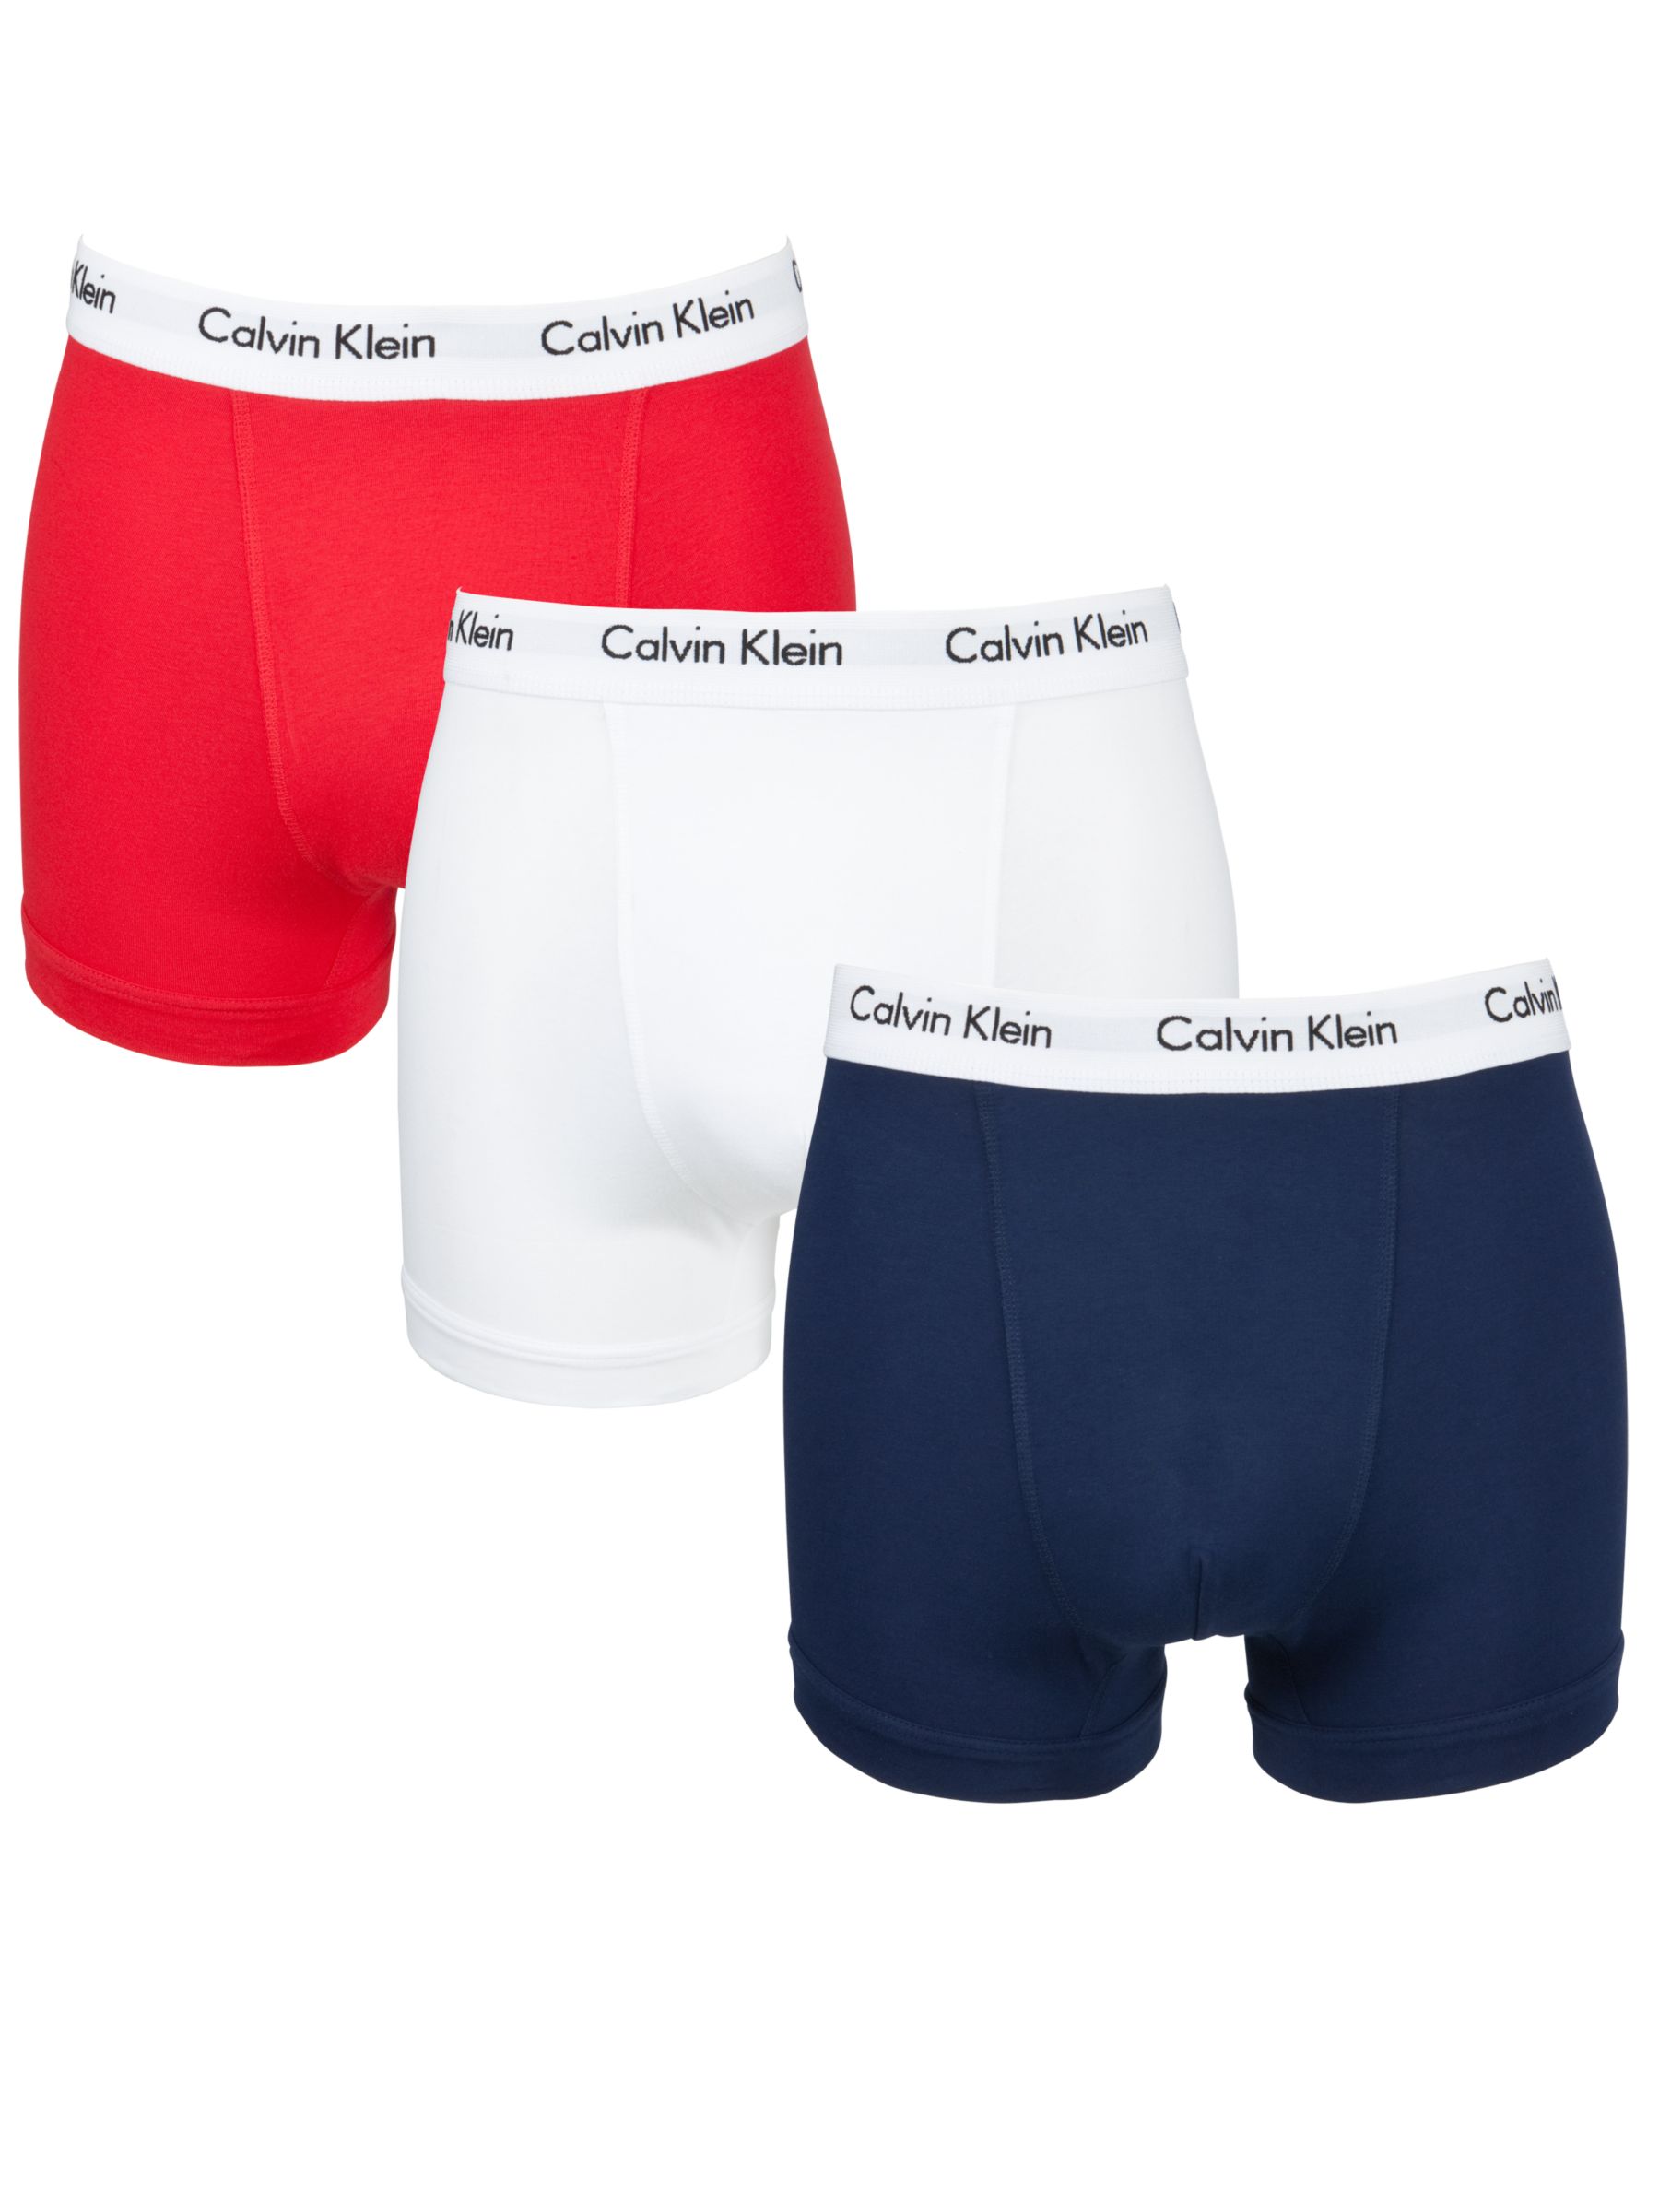 calvin klein cotton underwear